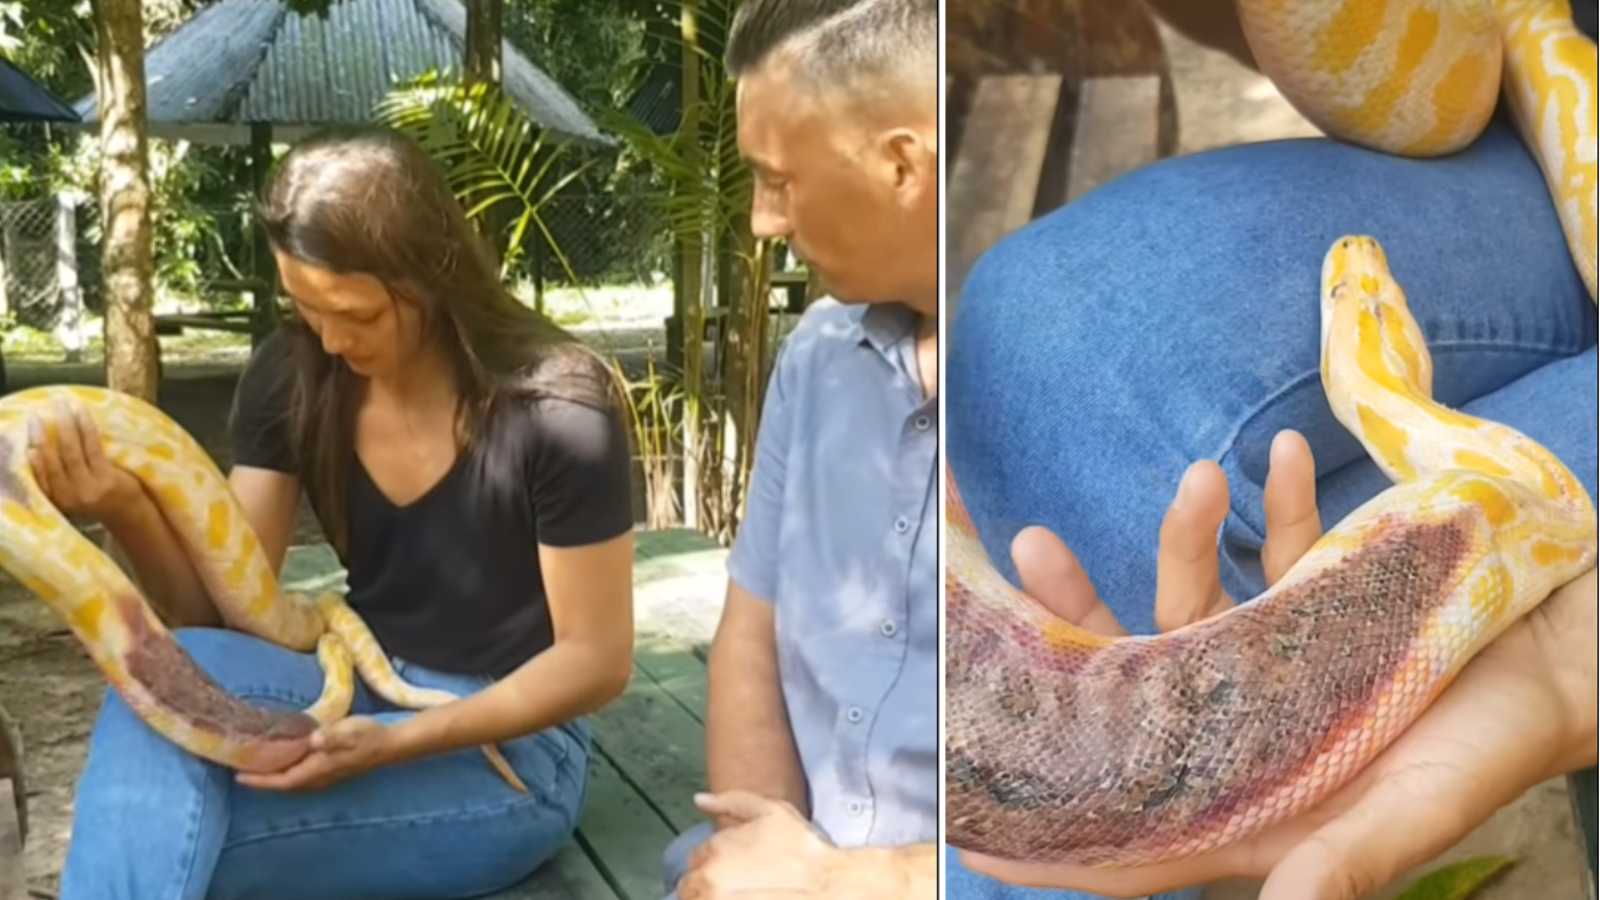 "Cuidem bem dela": Cobra píton é deixada em frente a zoo com garrafa de cachaça e bilhete